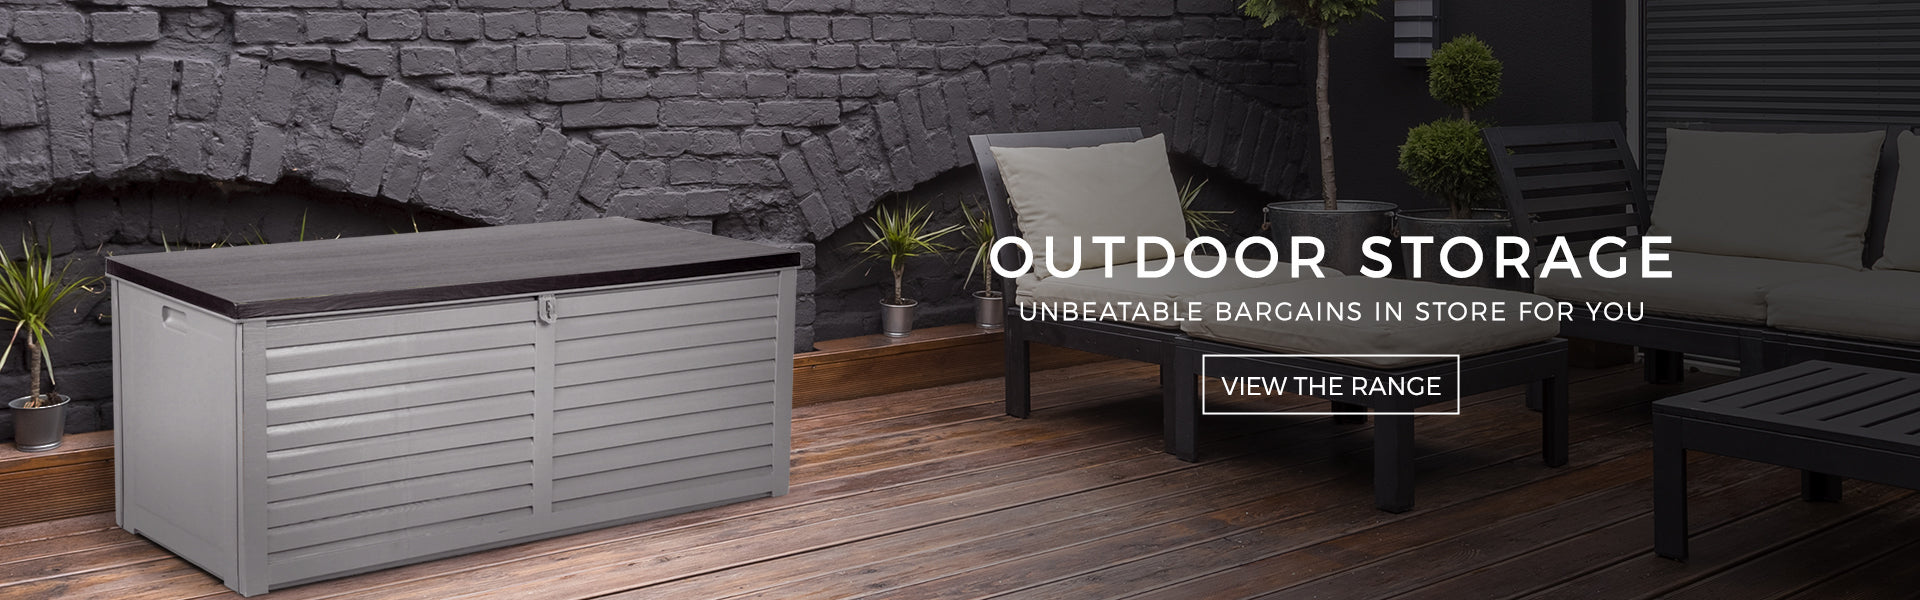 Outdoor storage ideas, storage boxes, lockable outdoor storage